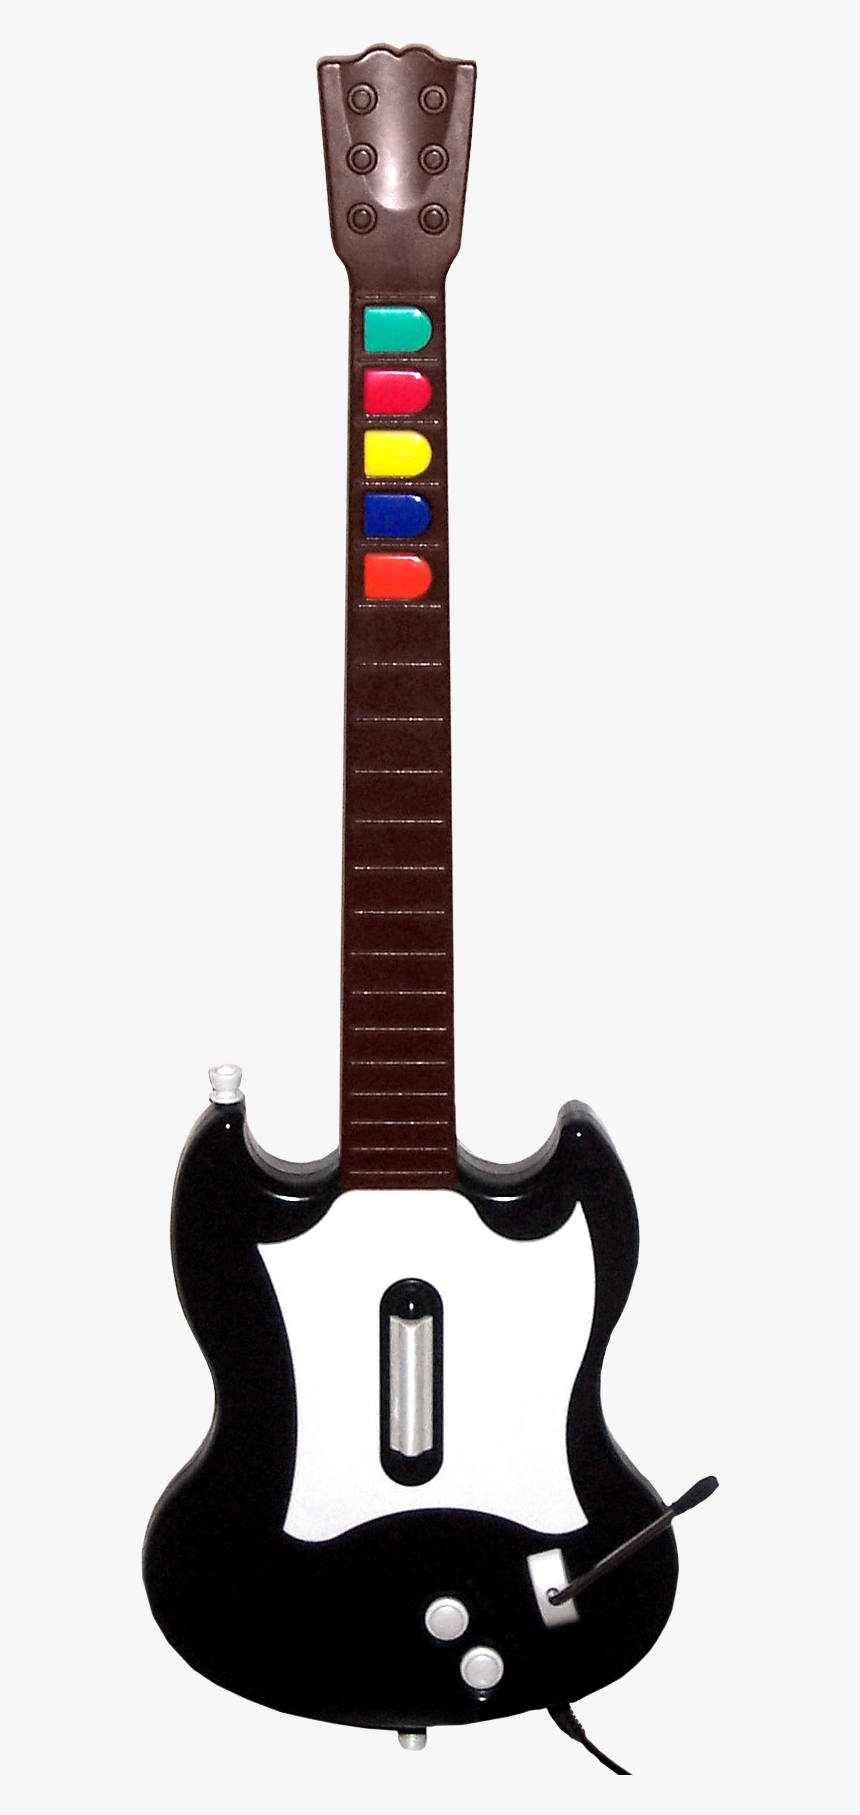 Guitar Hero Controller - Guitar Hero Game Guitar, HD Png Download, Free Download